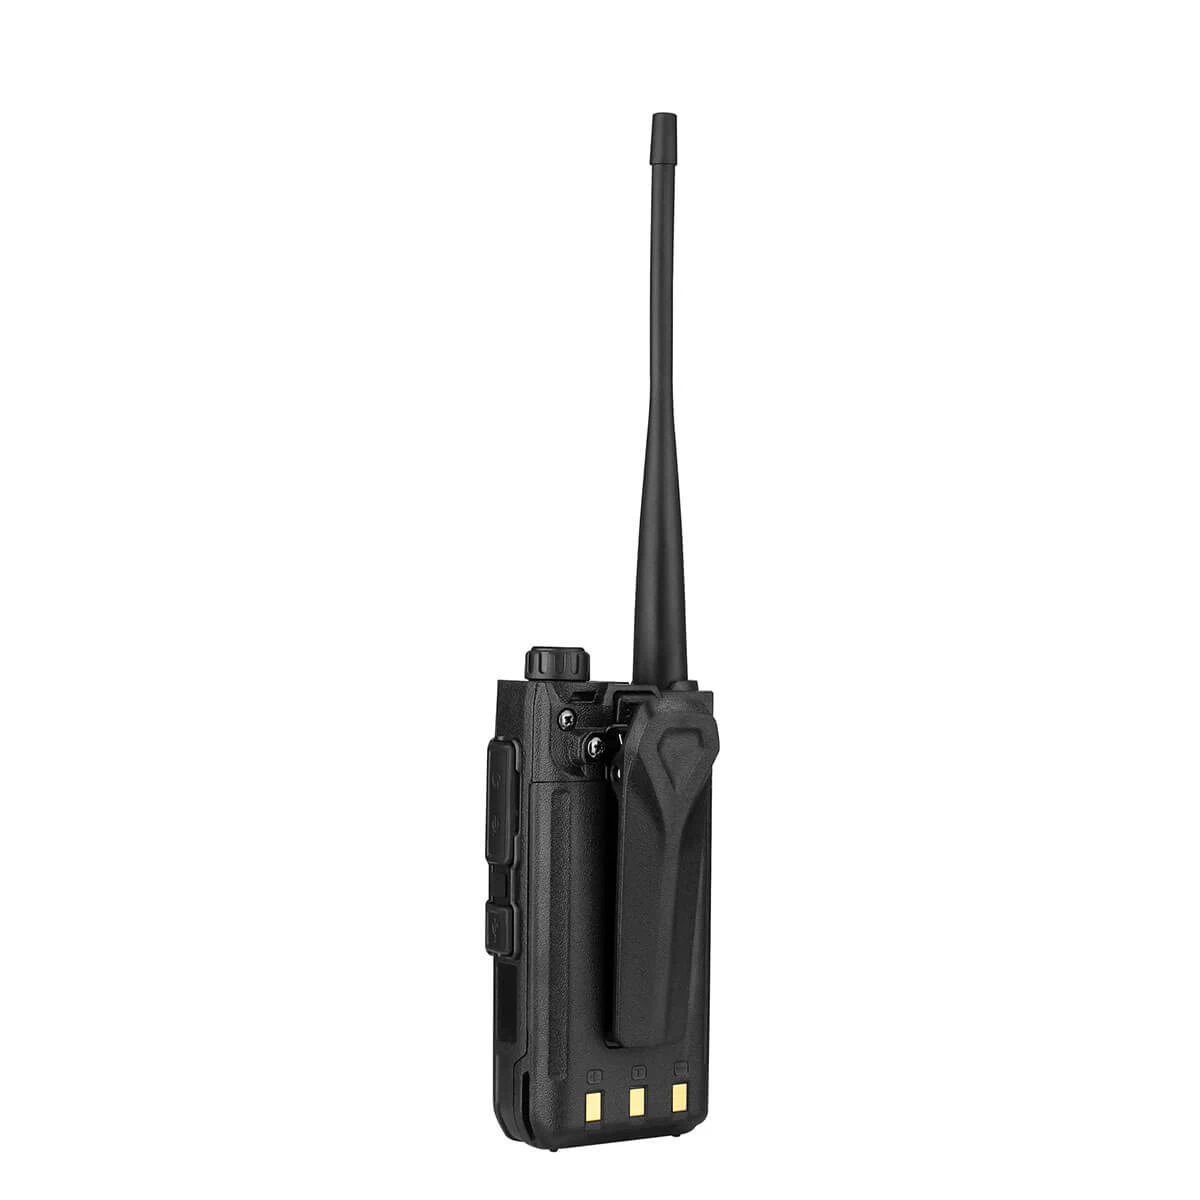 Retevis RA85 Walkie Talkie profesional, con micrófono de largo alcance,  recargable, NOAA, USB-C, radio GMRS de mano para acampar fuera de carretera  al